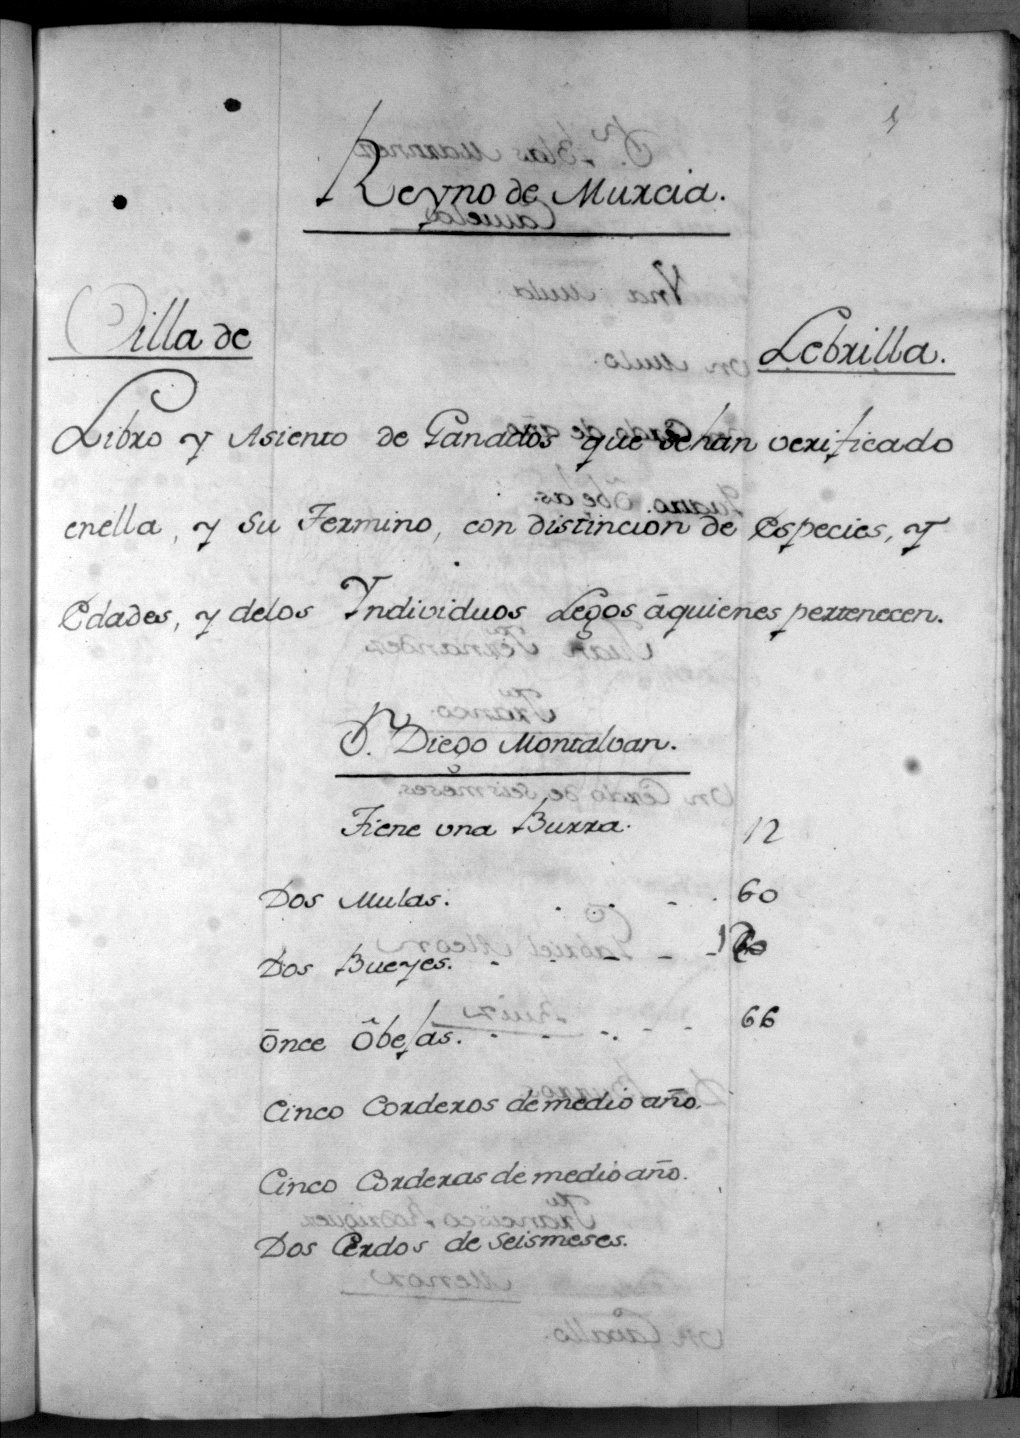 Libro registro de ganados de la villa de Librilla.